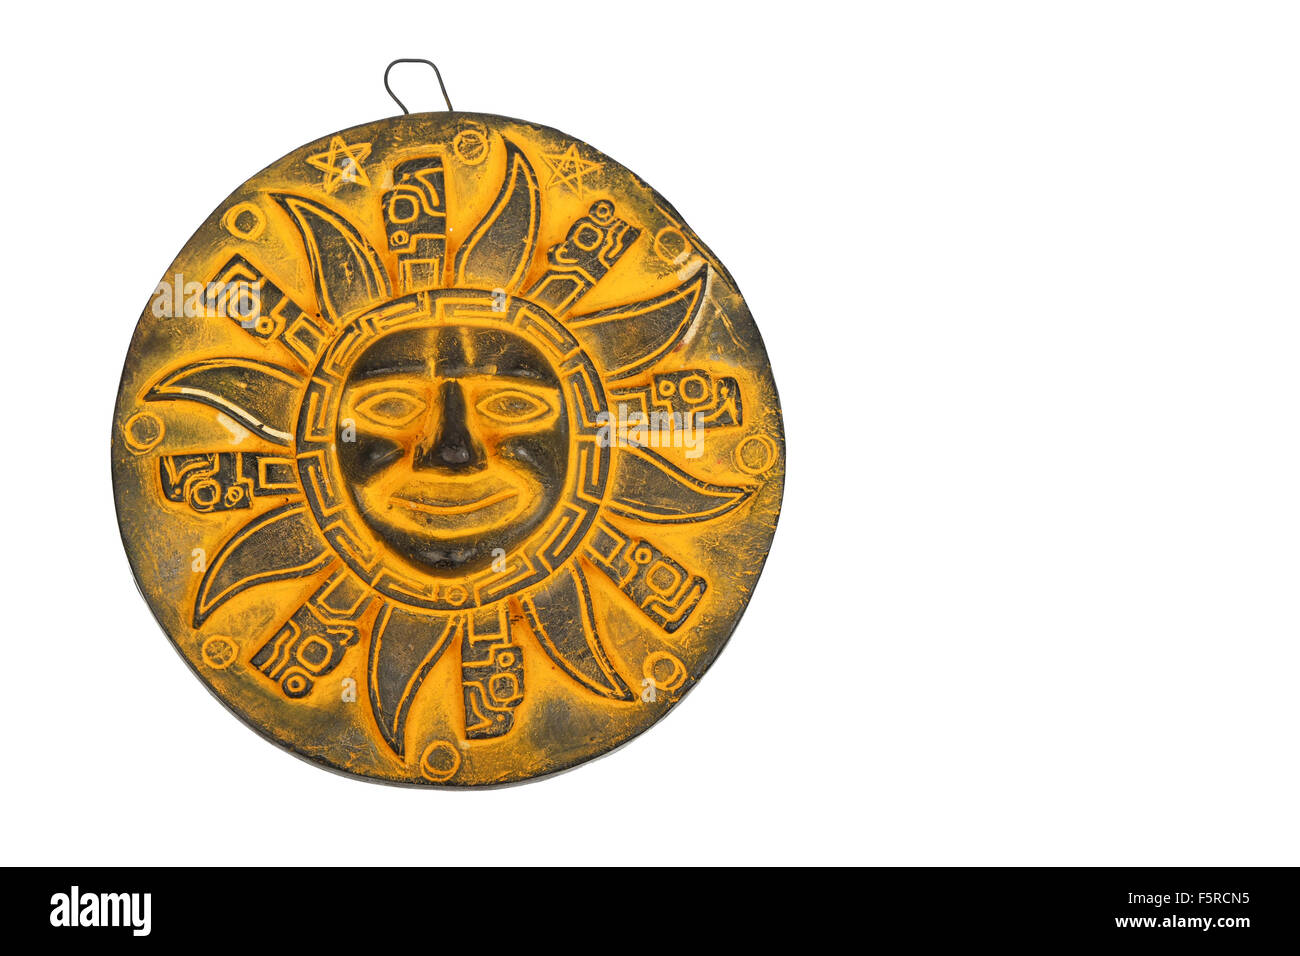 Traditionnel mexicain en céramique jaune symbole de soleil souvenir plaque isolated on white Banque D'Images